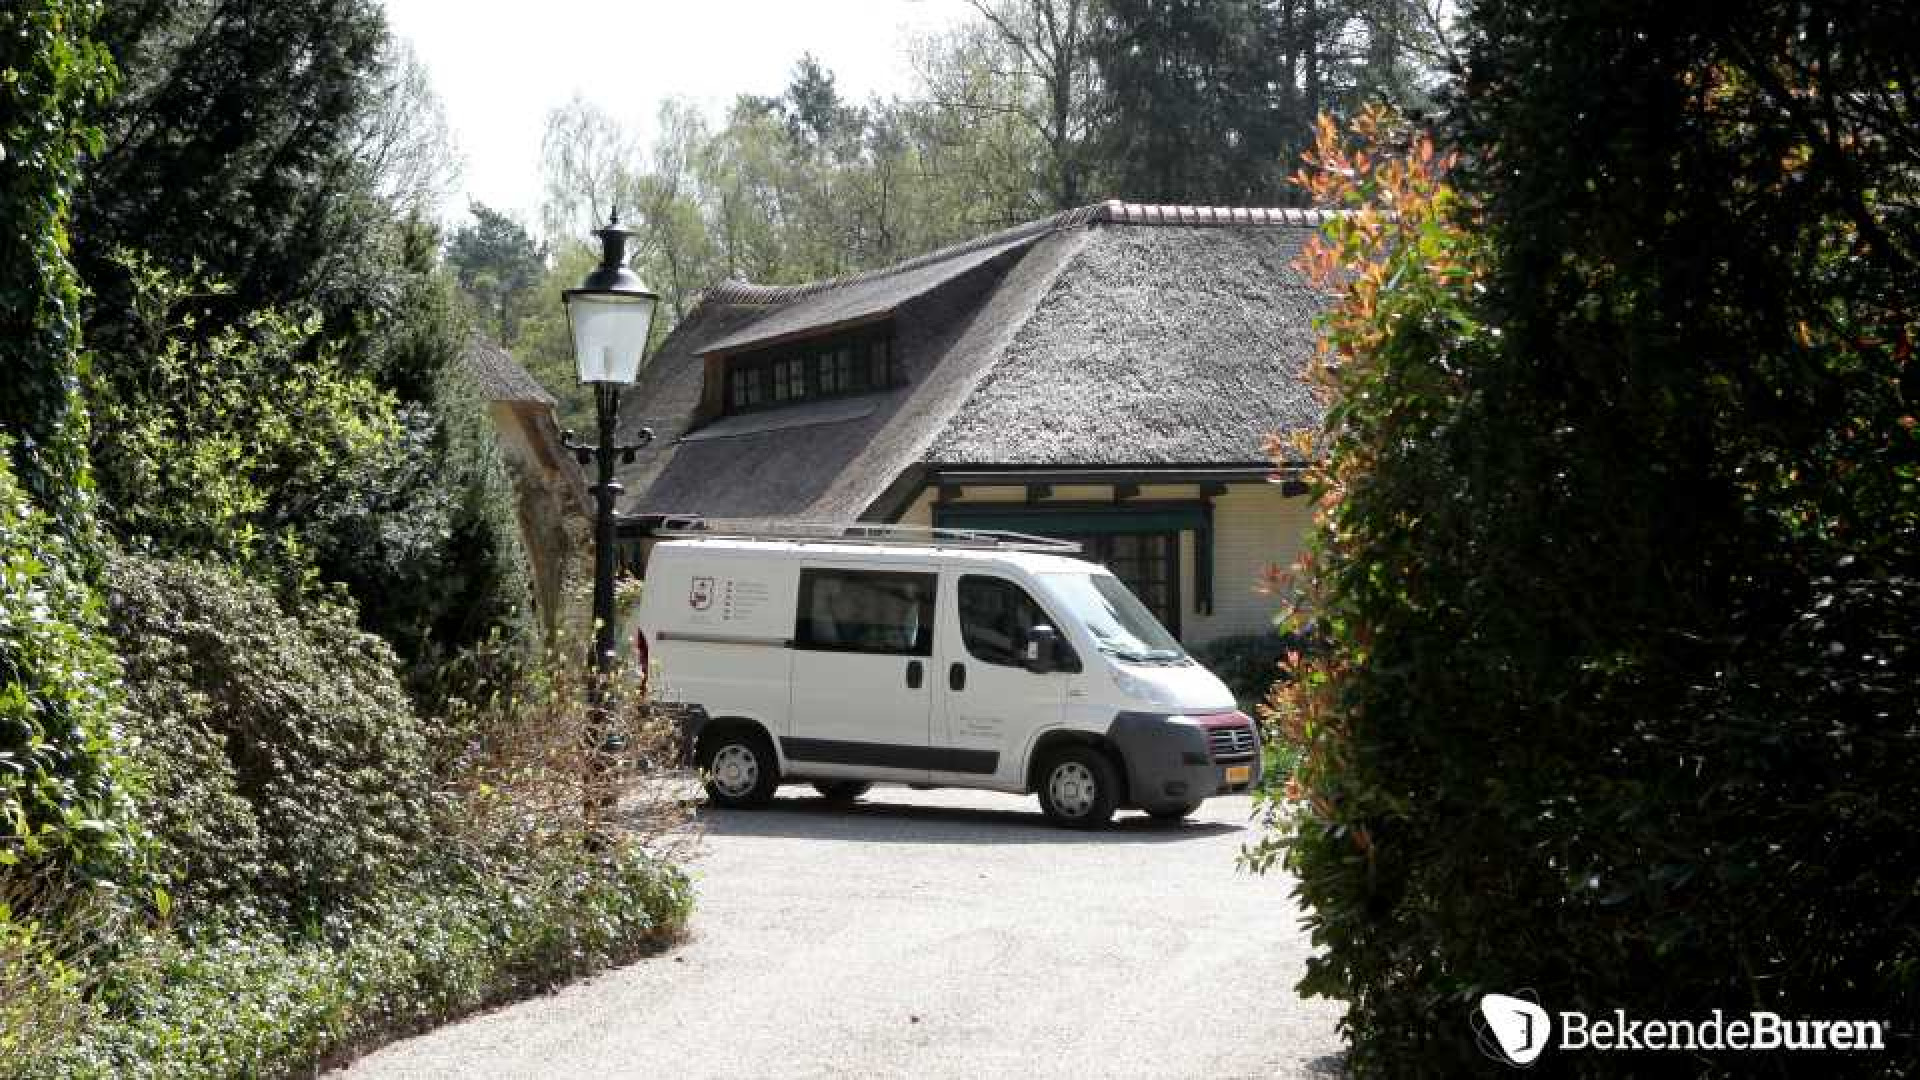 Prinses Irene koopt kapitale villa in Doorn. Zie foto's 2